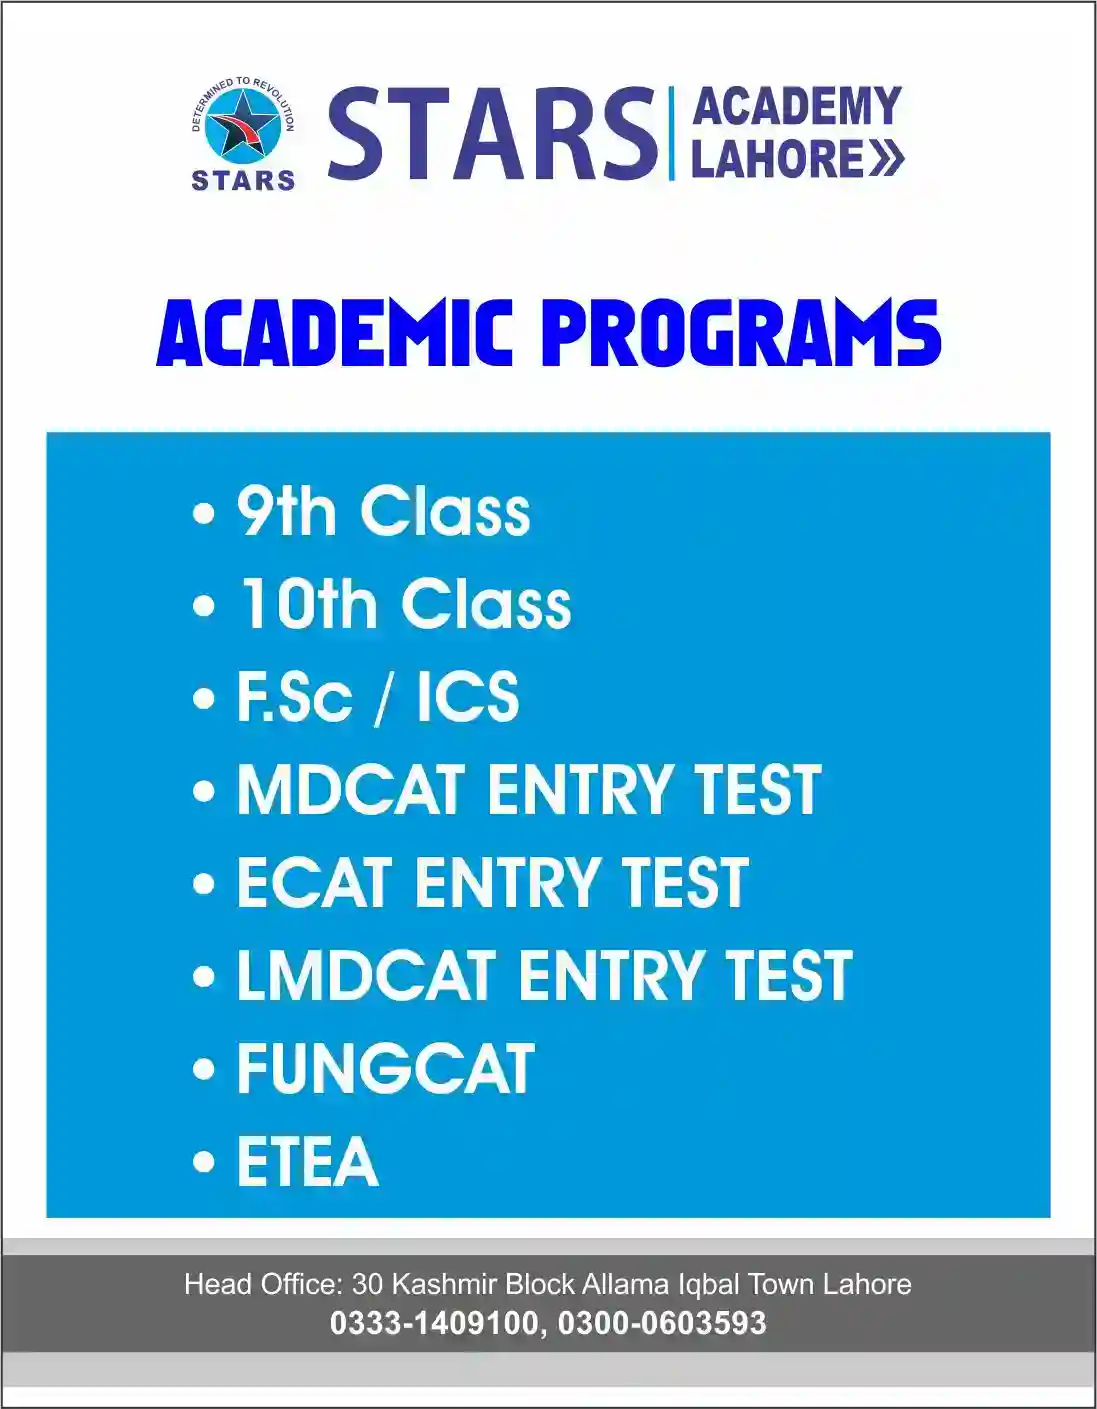 Stars Academy Lahore Academic Programs